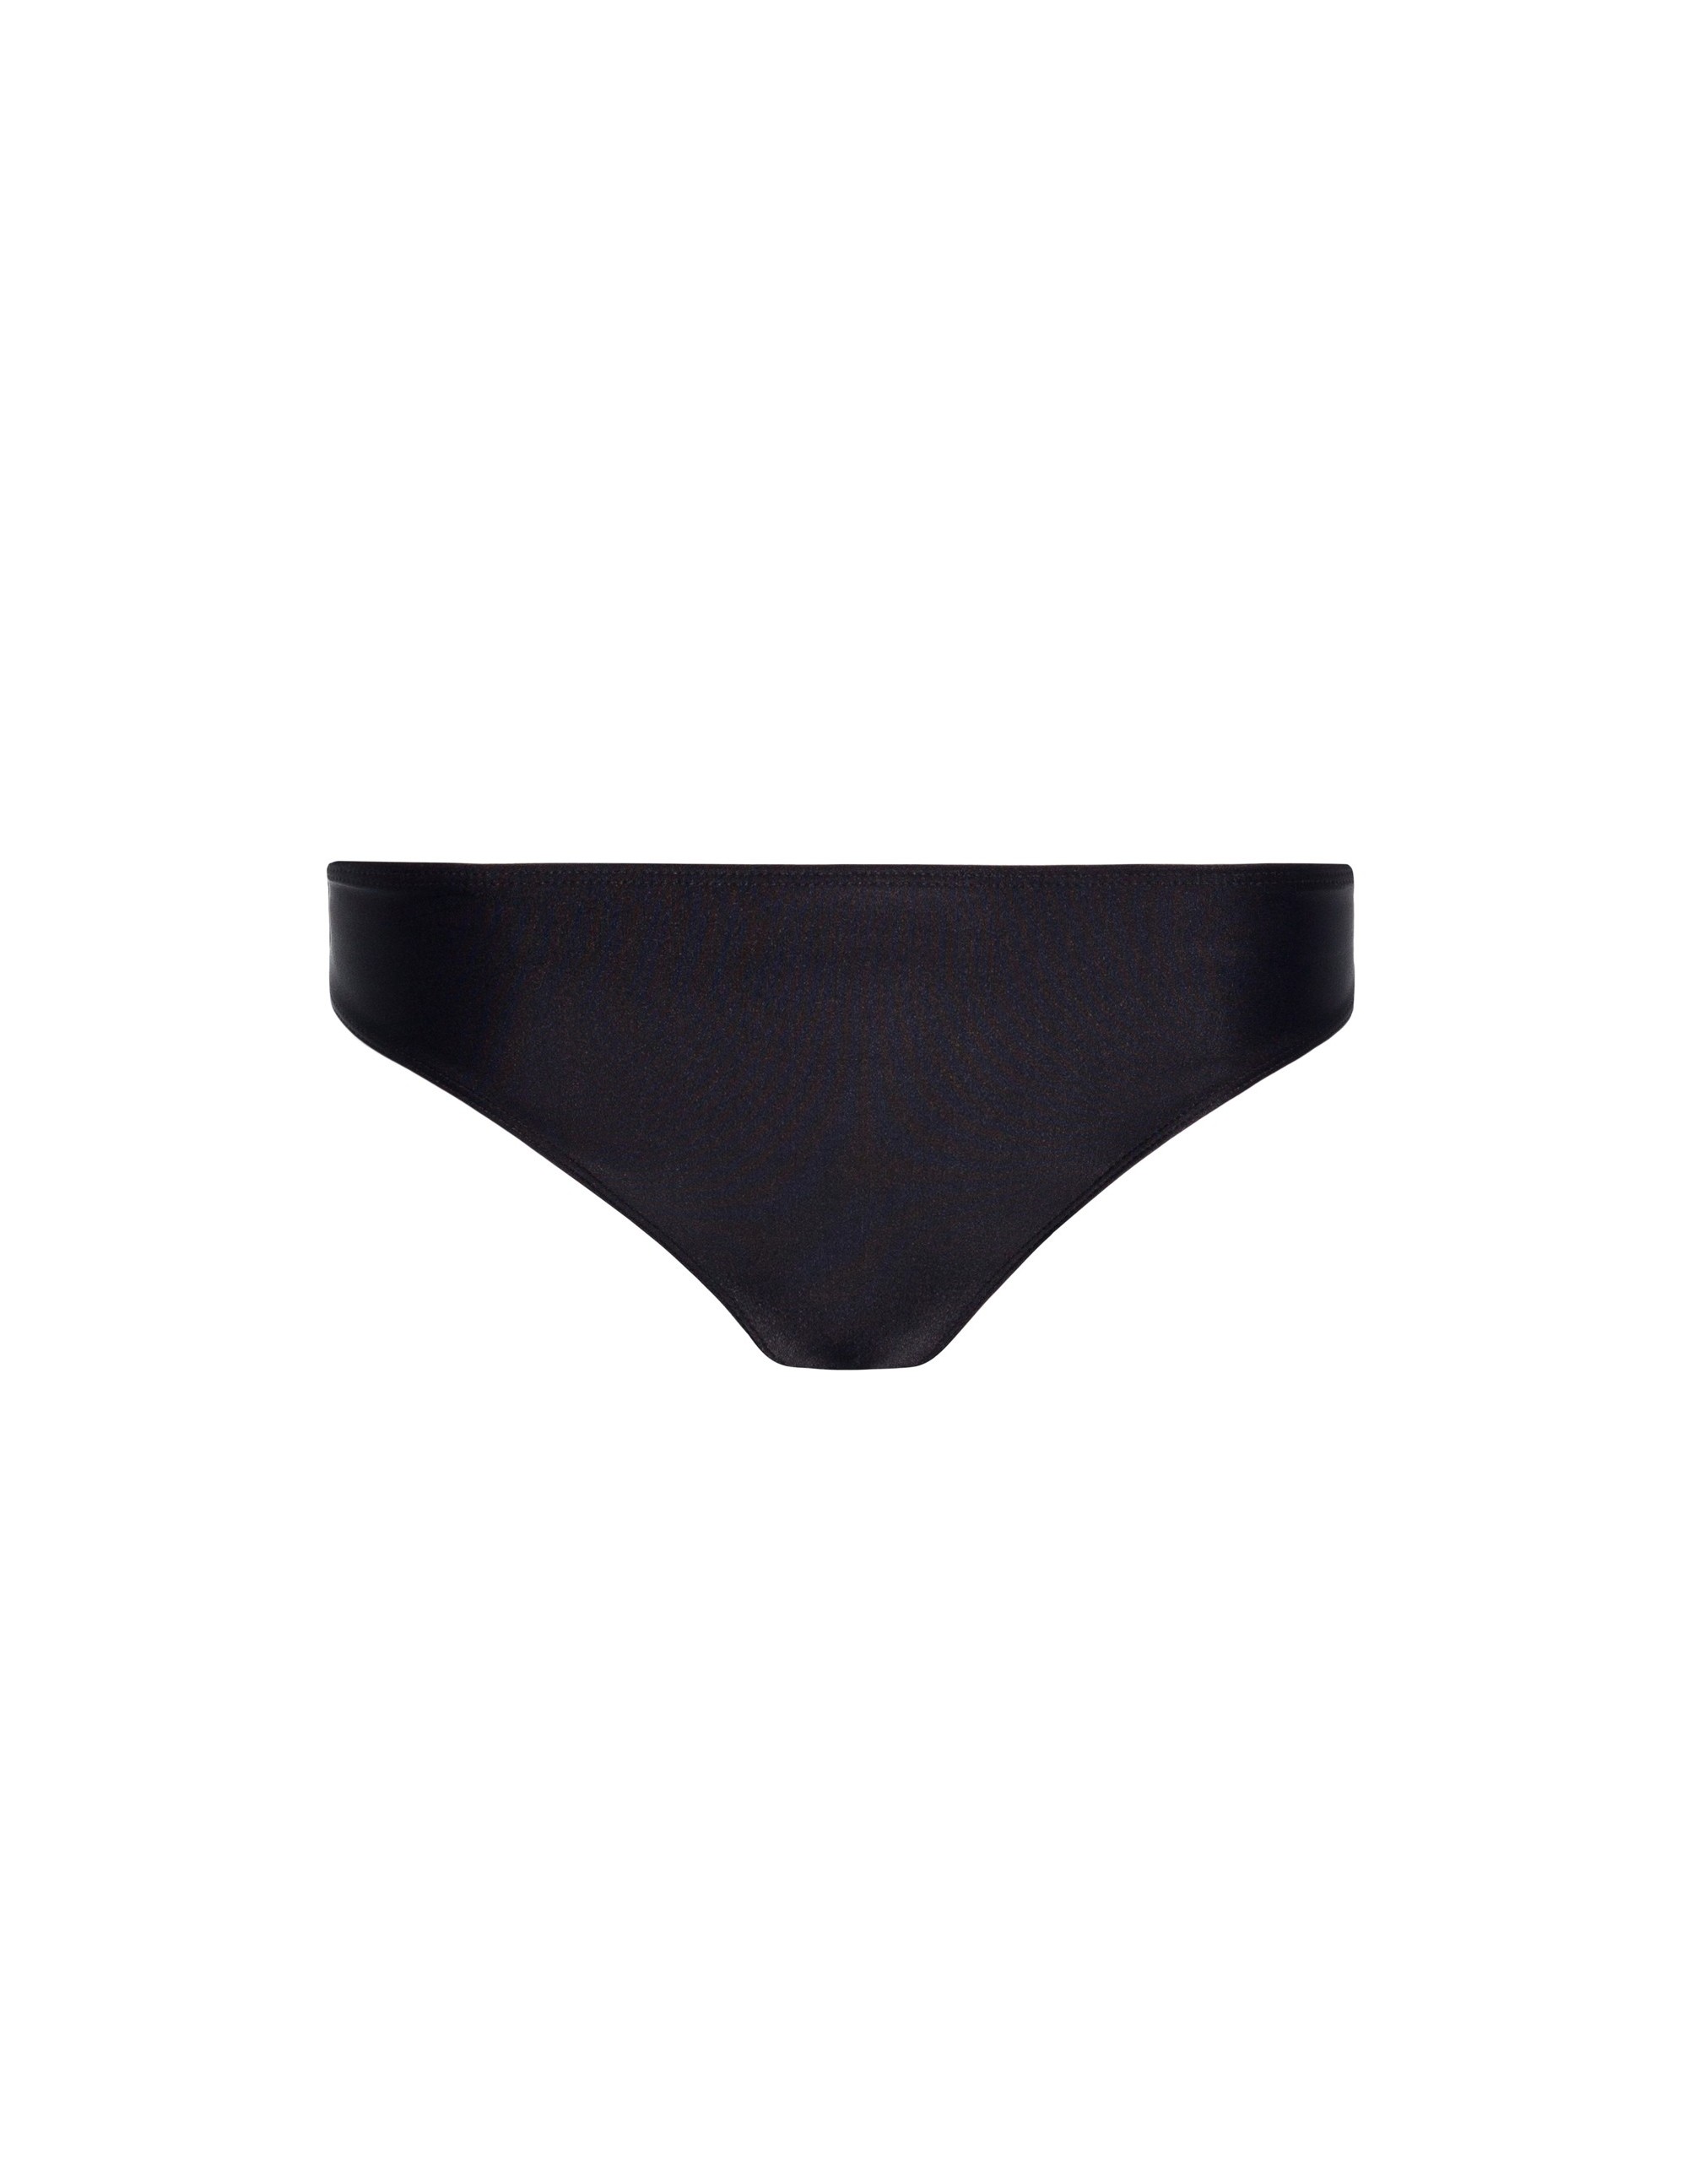 VAI bikini bottom - MATTE BLACK